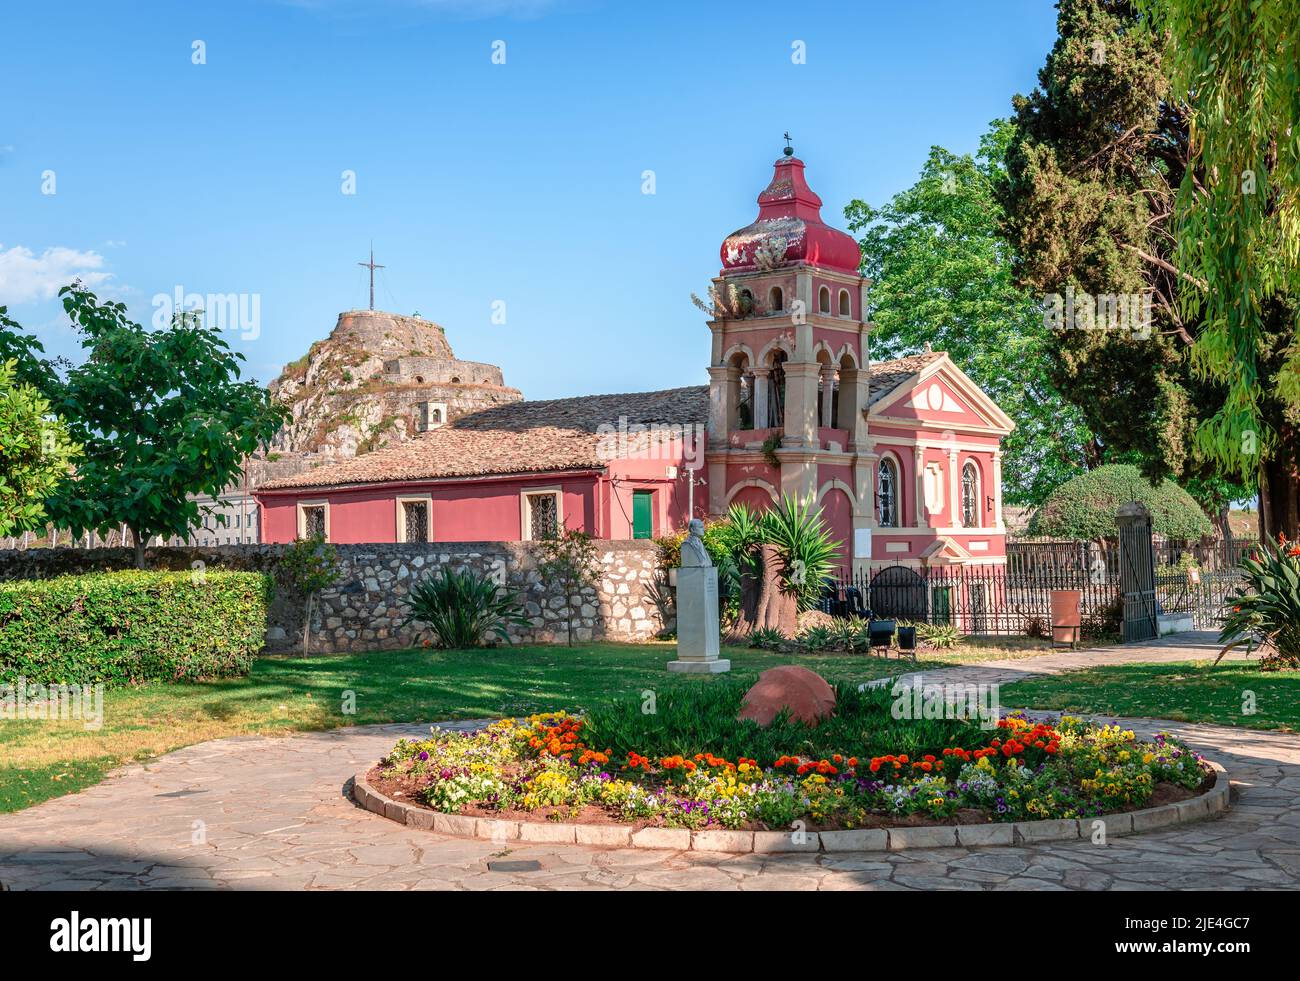 Der Garten der Menschen, ein kleiner öffentlicher Park und die malerische orthodoxe Kirche Panagia Mandrakina in Korfu-Stadt, Insel Korfu, Griechenland. Stockfoto